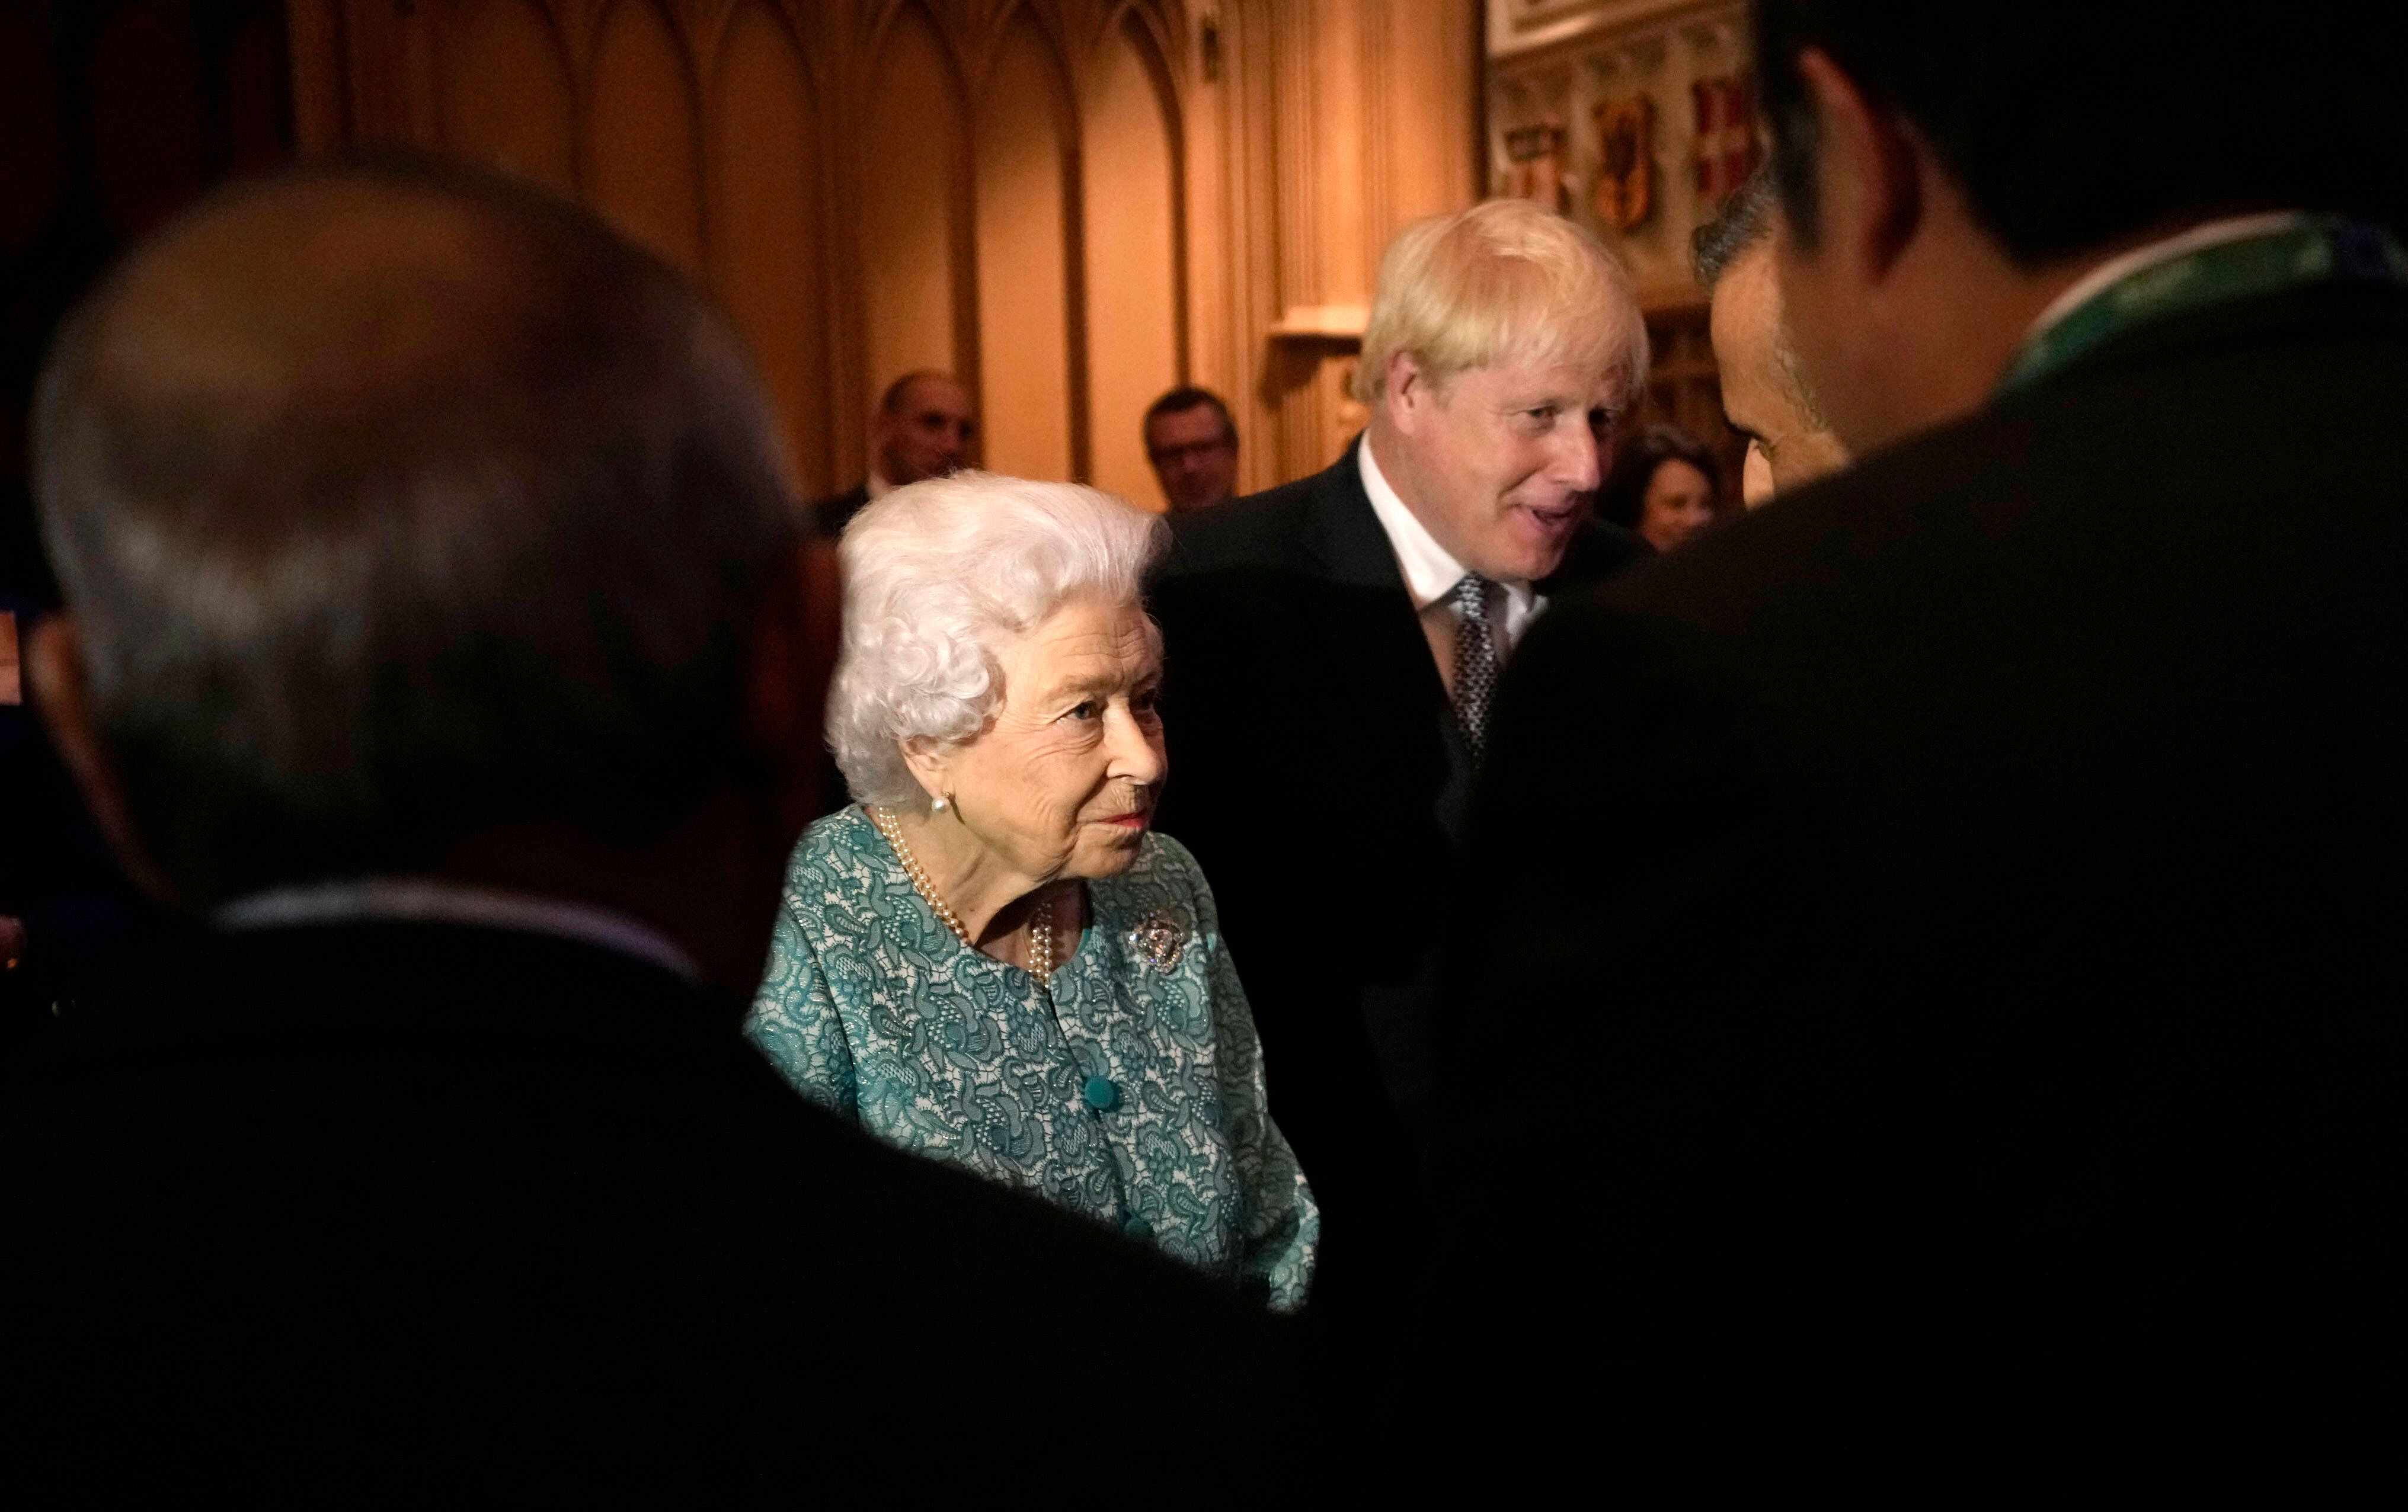 La reine Elizabeth et le Premier ministre Boris Johnson, dont les jours sont peut-être comptés...